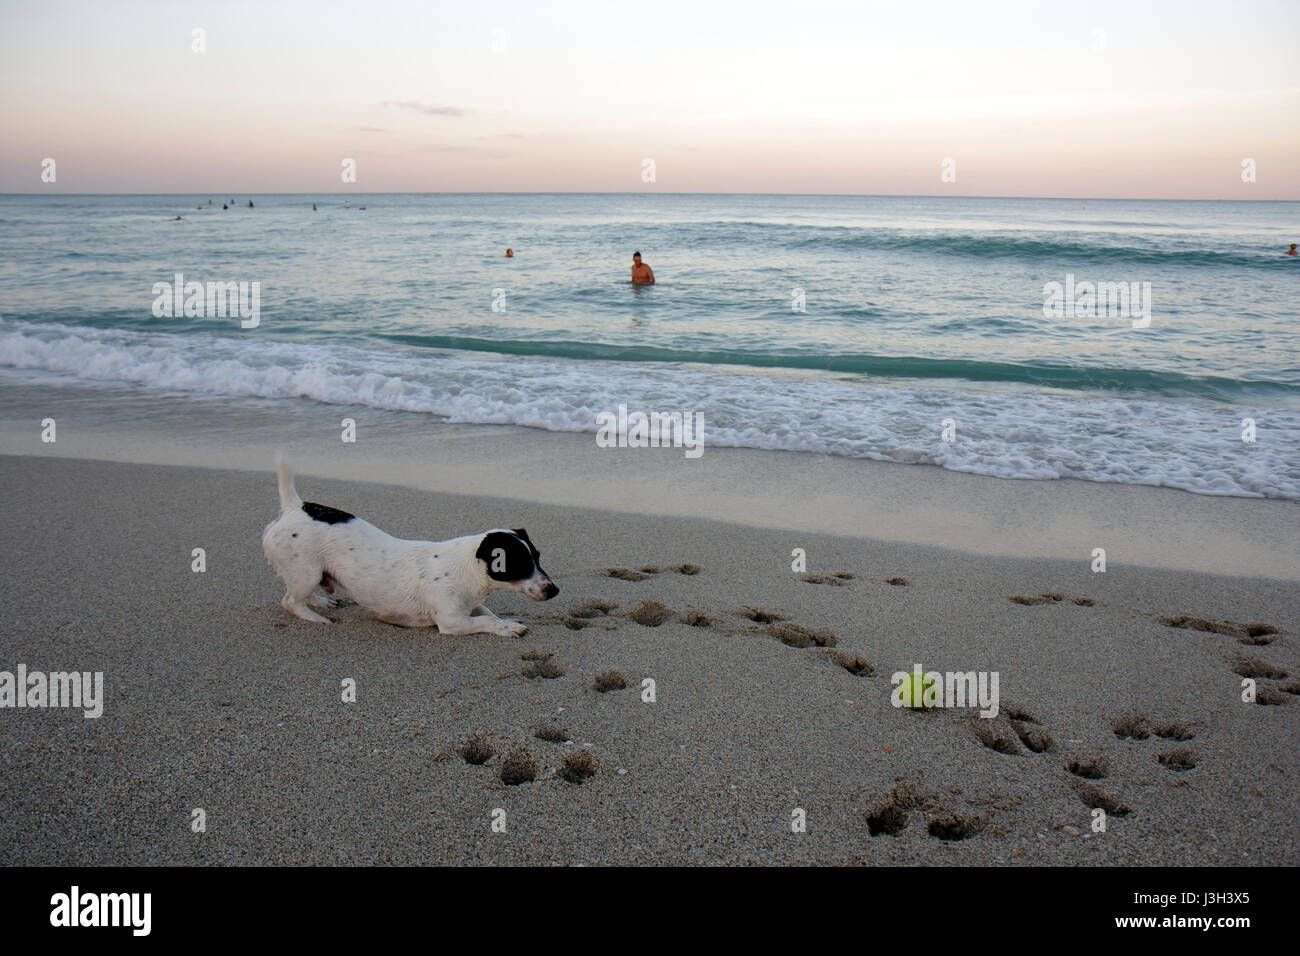 Miami Beach Florida,Oceano Atlantico,acqua,riva,spiaggia pubblica,sabbia,riva,spiaggia,mare,cane,palla,animali,gioco,stampa zampa,Jack Russell terrier,surf,FL080911025 Foto Stock